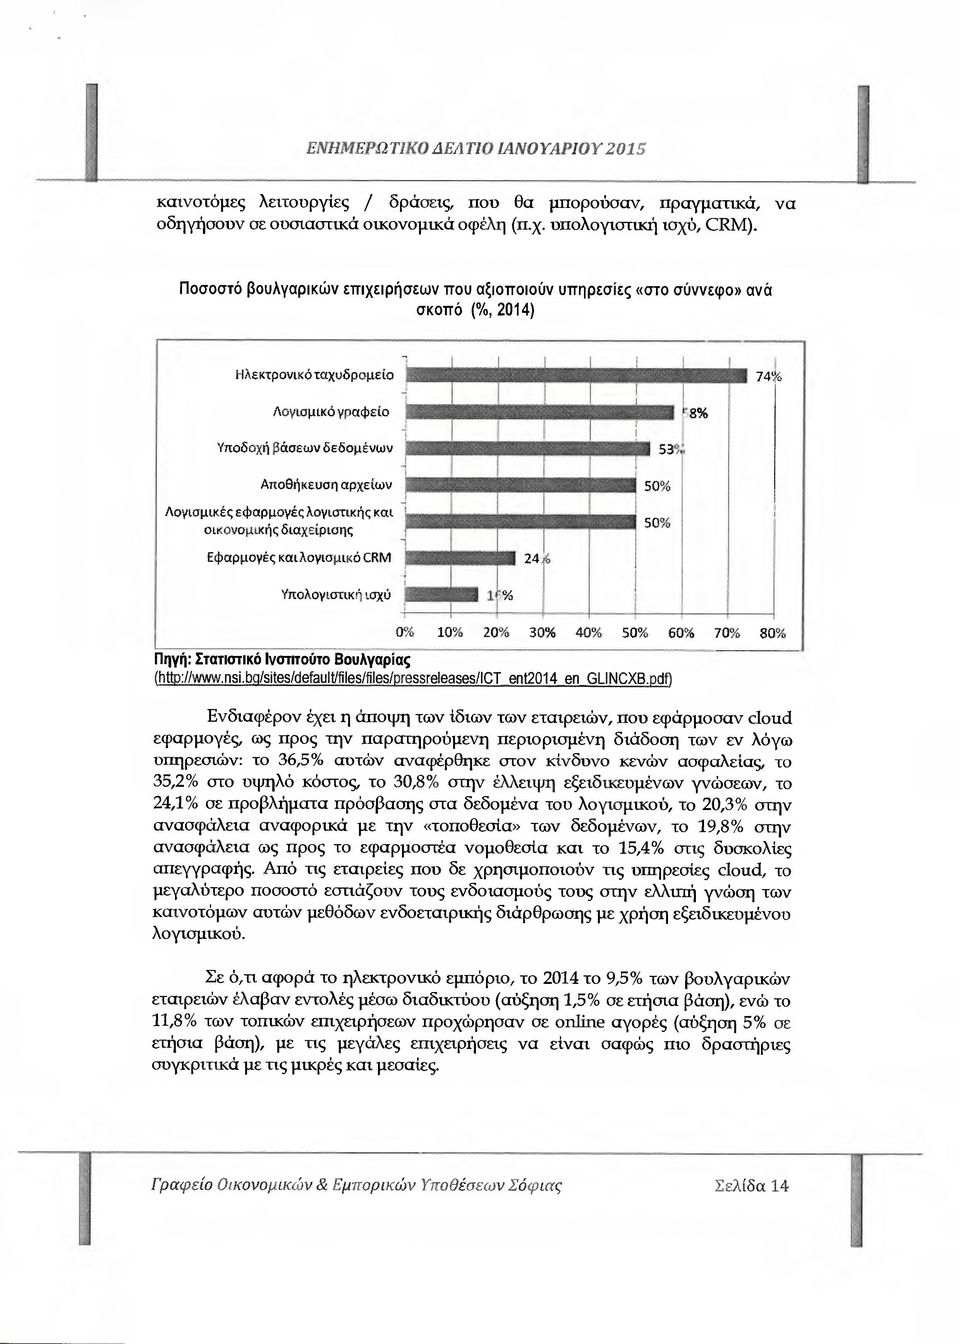 εφαρµογές λογιστικής και οικονοµικής διαχείρισης 5355 50% 50% Εφαρµοyές και λογισµικό CRM 24 Υπολογιστική ισχύ 1 0β6 10% 20%ο 30% 40%ο 50 χ, 60%ο 70%ο 80% Πηγή: Στατιστικό Ινστιτούτο Βουλγαρίας